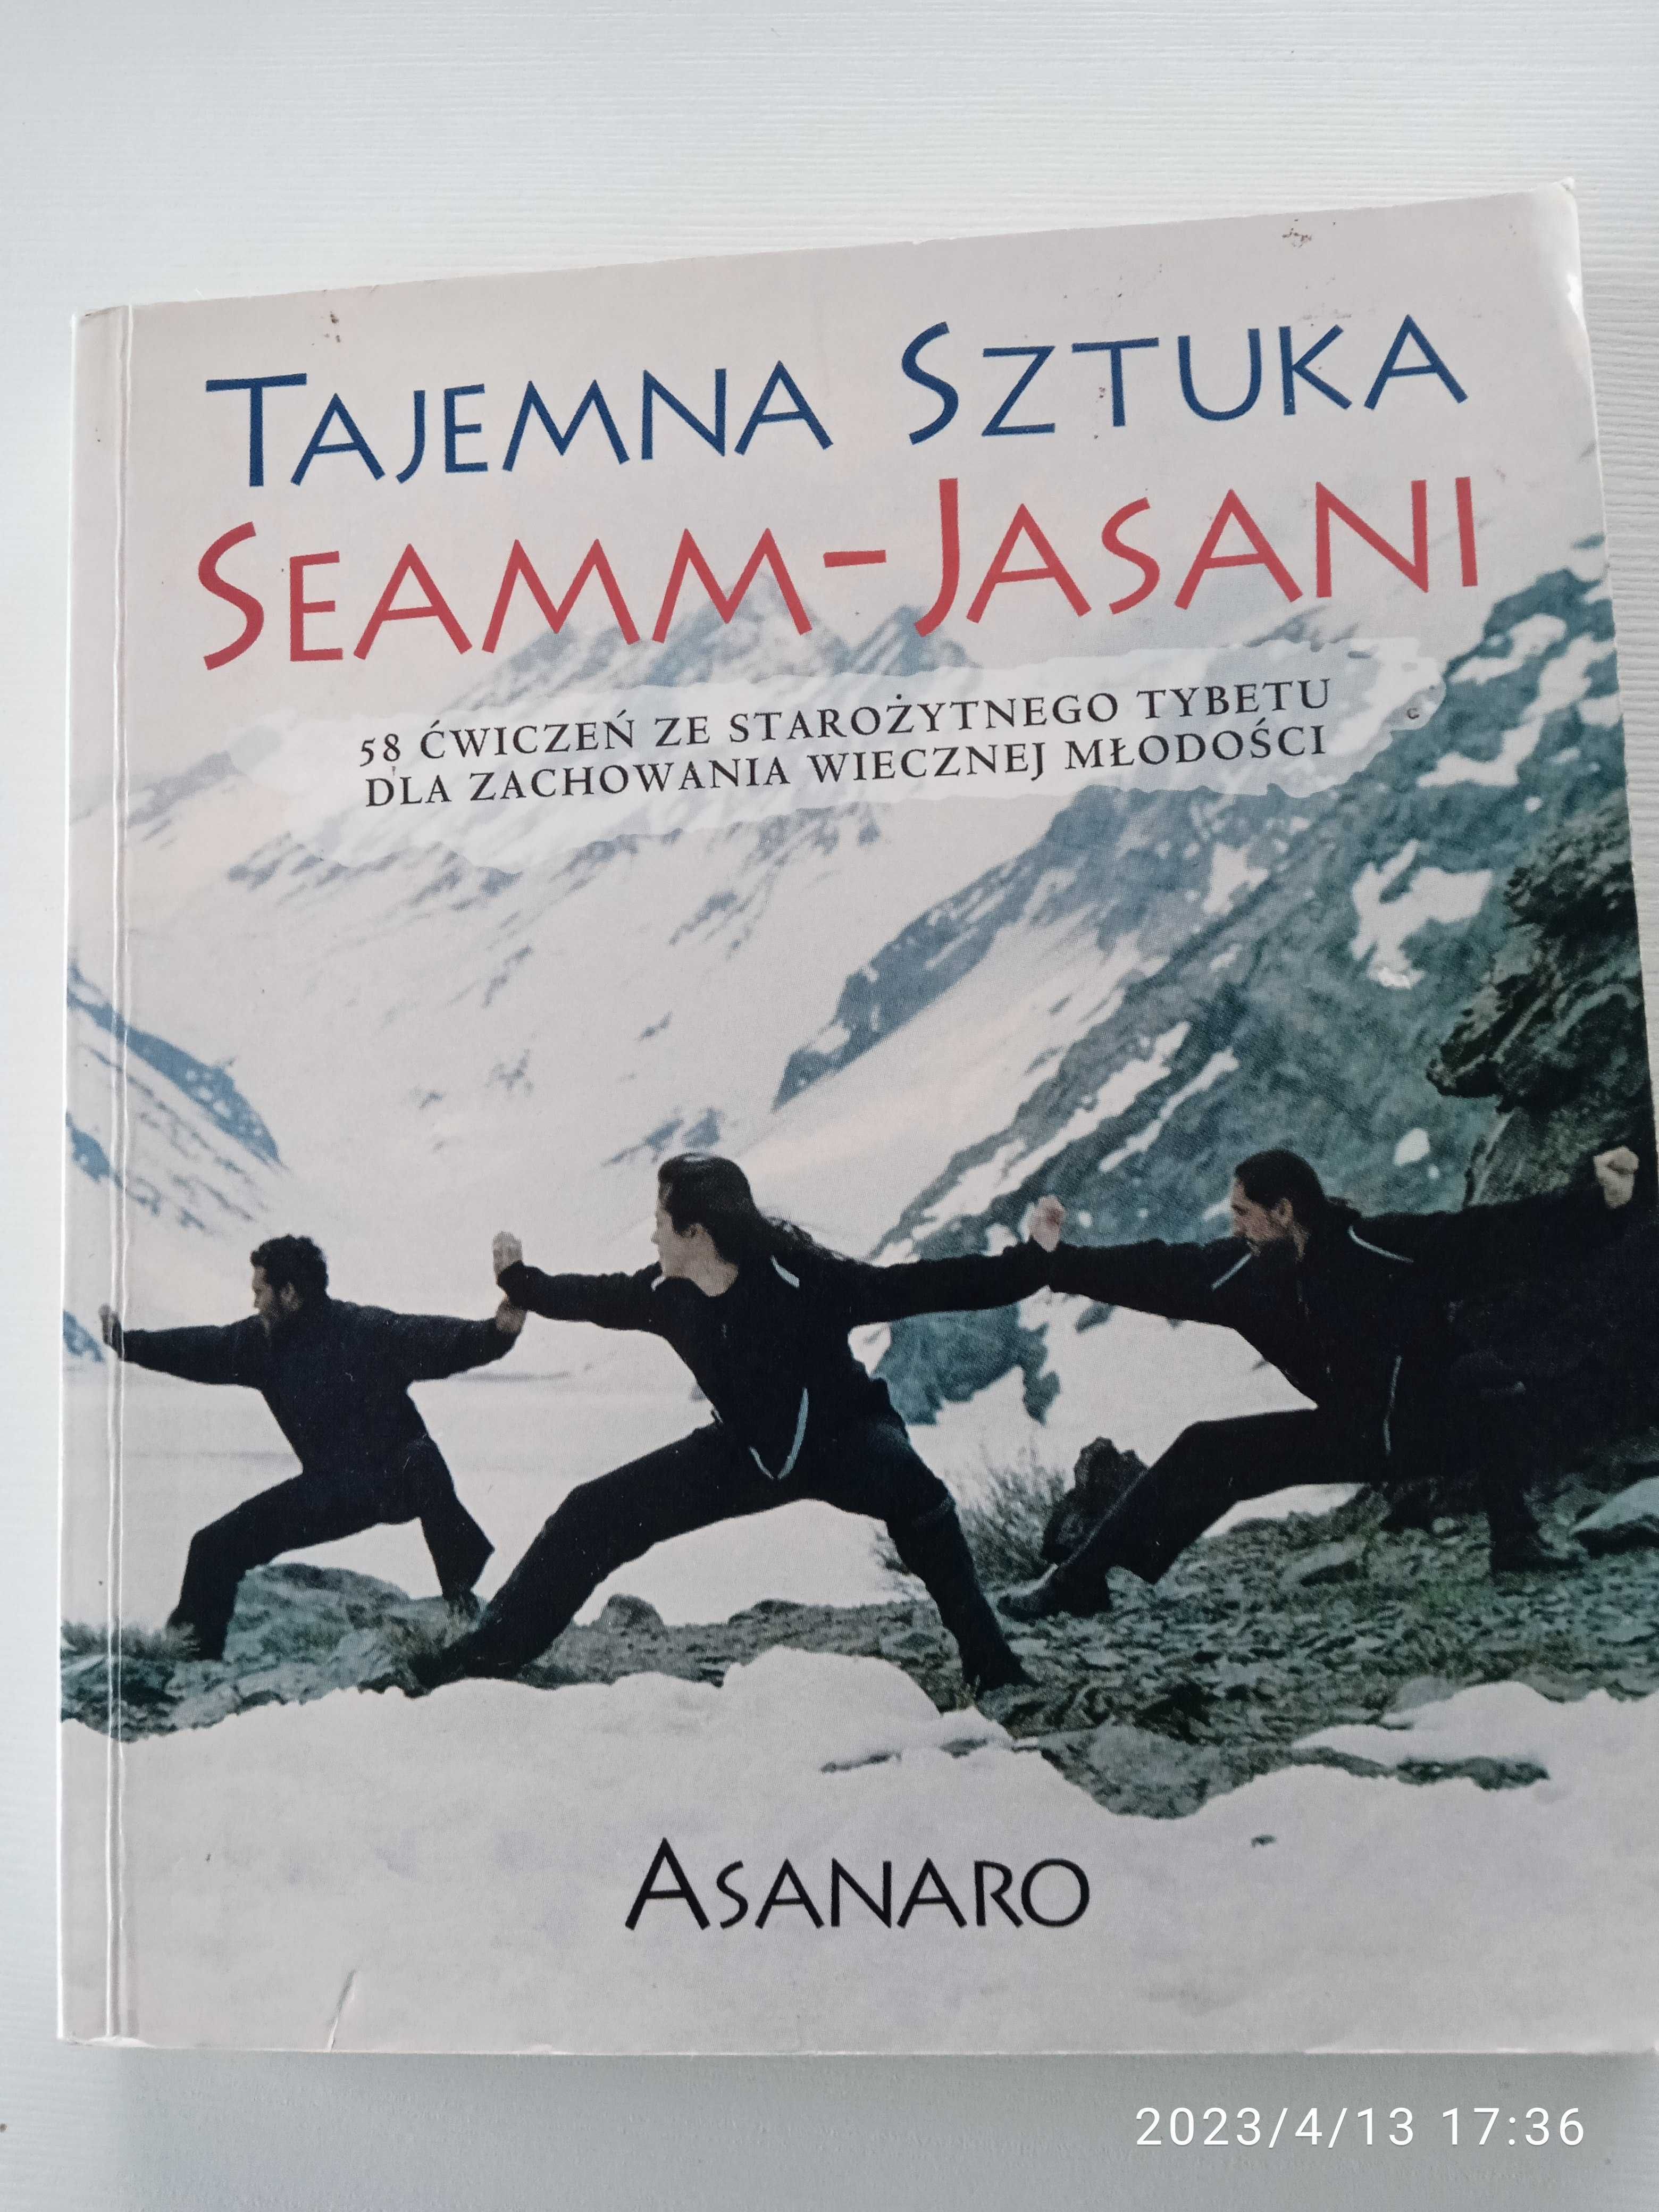 Tajemna sztuka Seamm-Jasani -  Asanaro